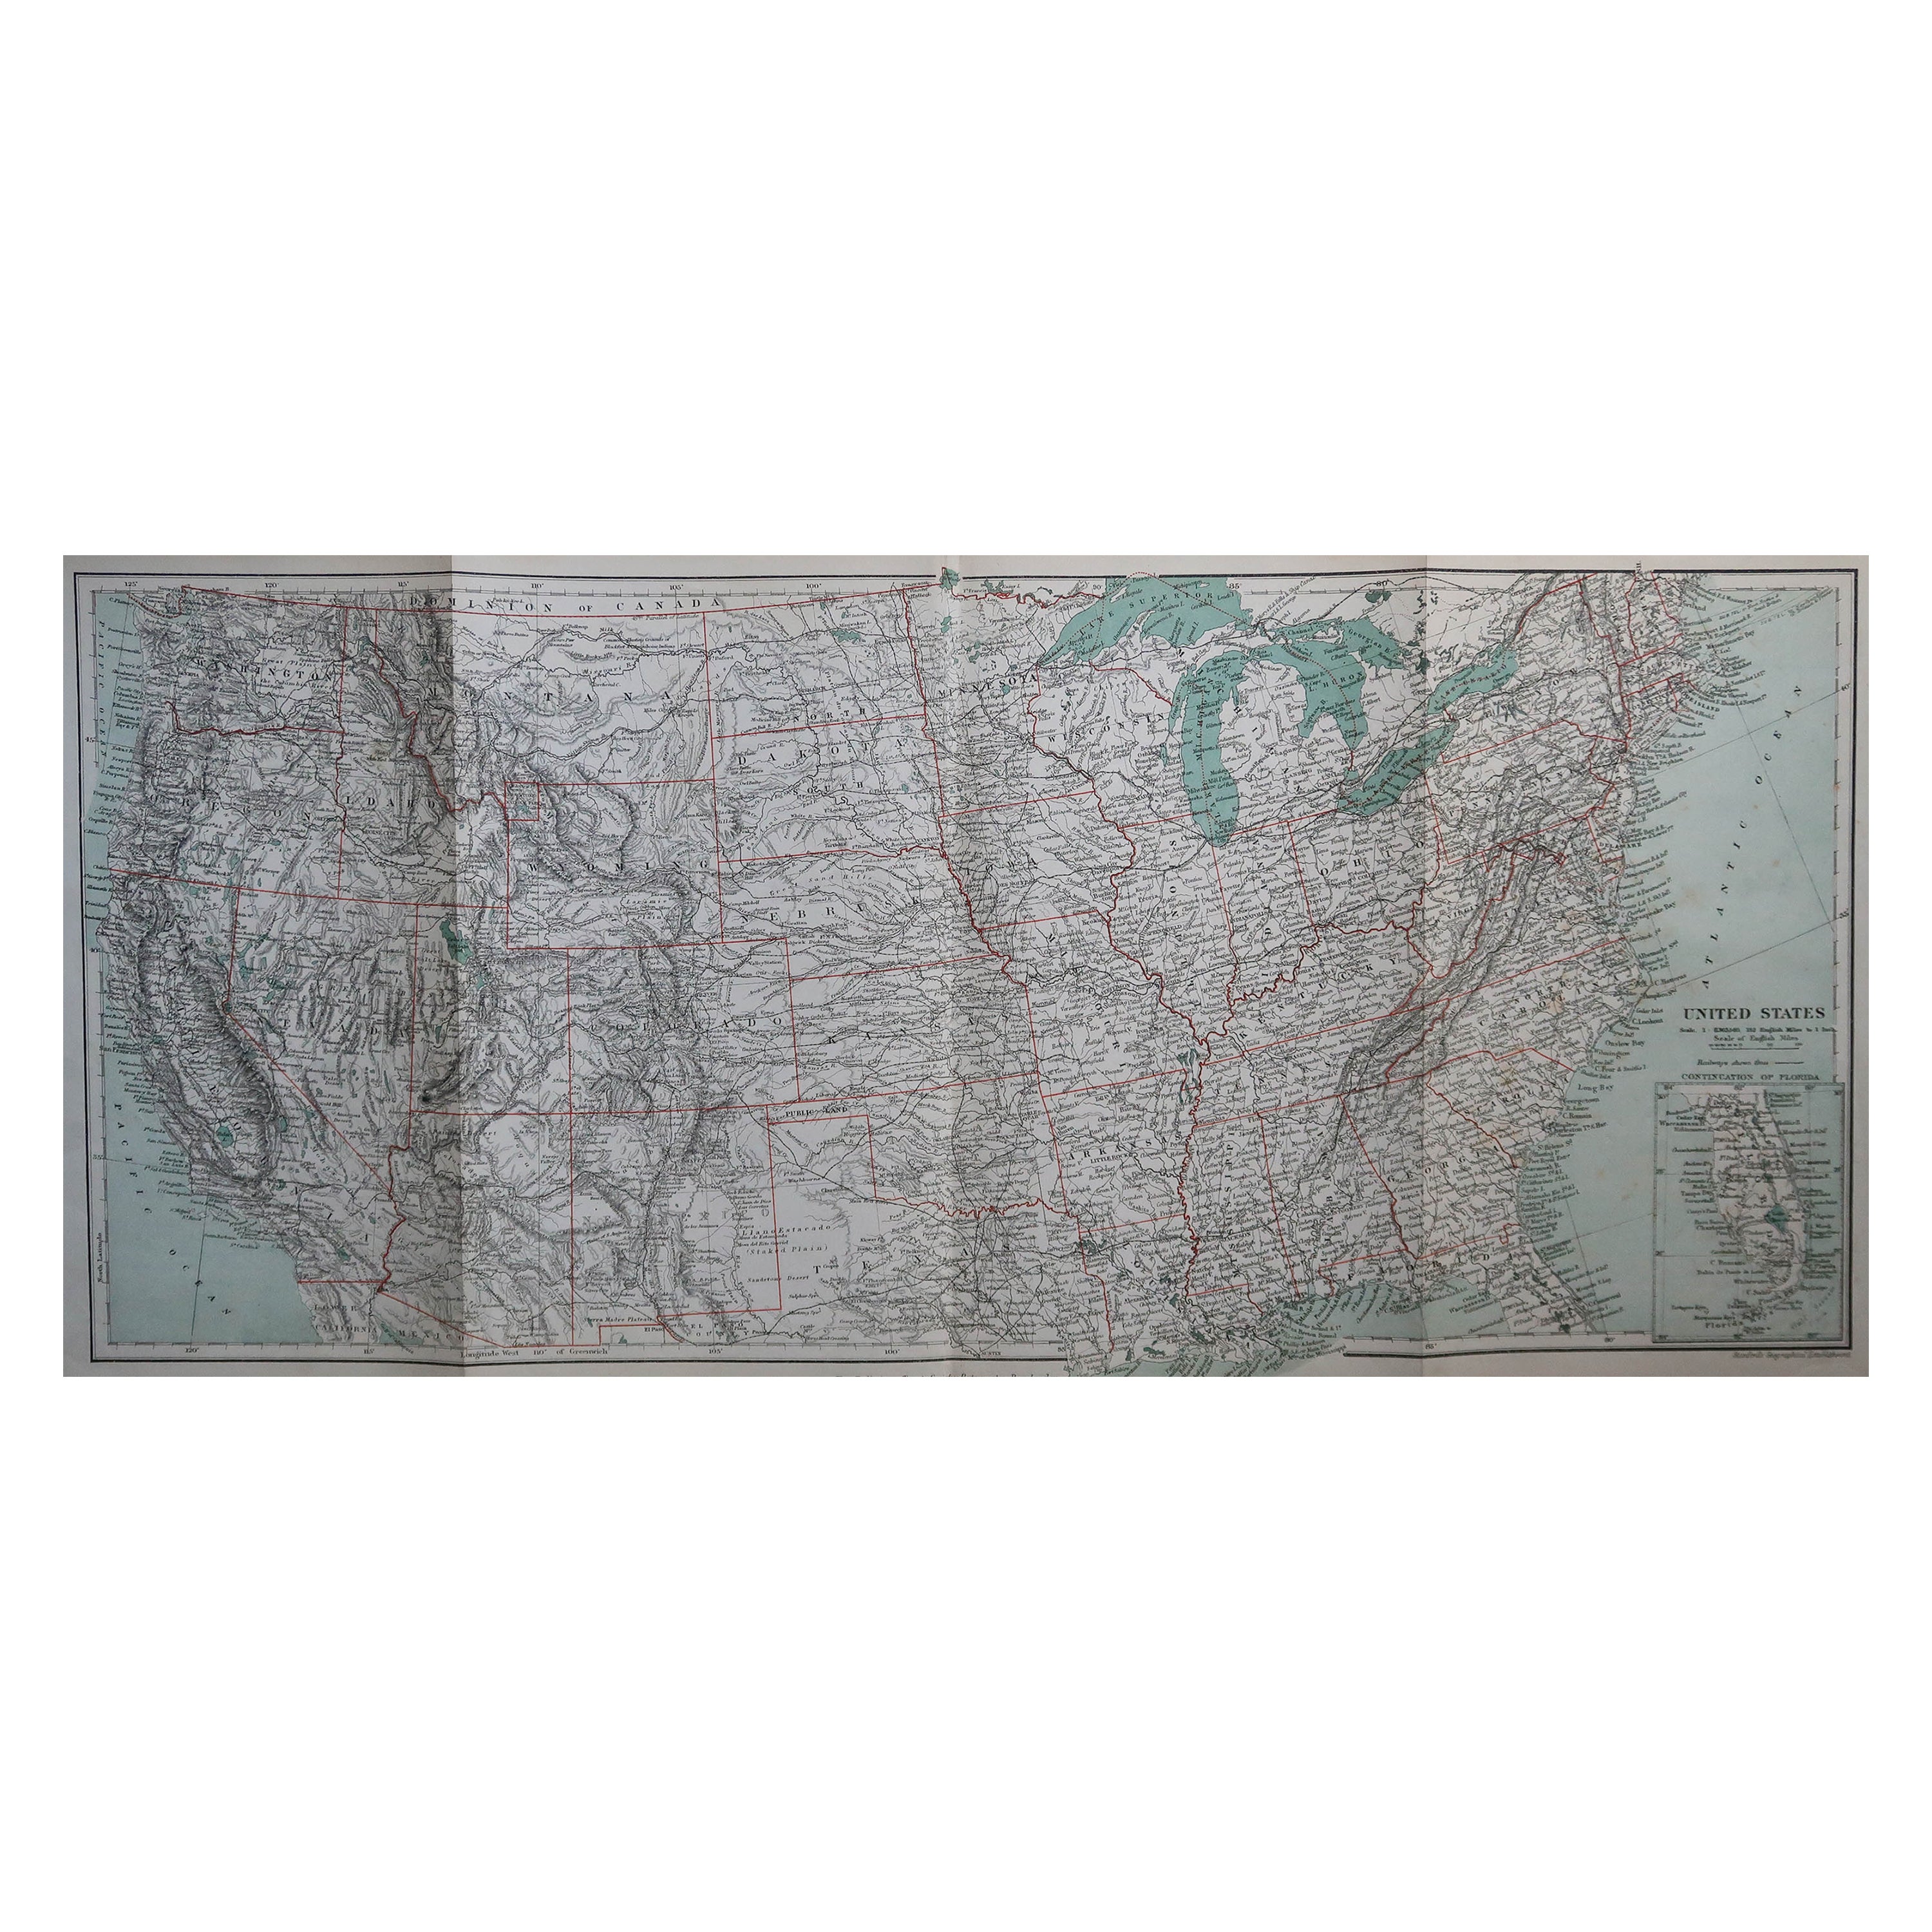 Carte ancienne d'origine des États-Unis d'Amérique, vers 1890